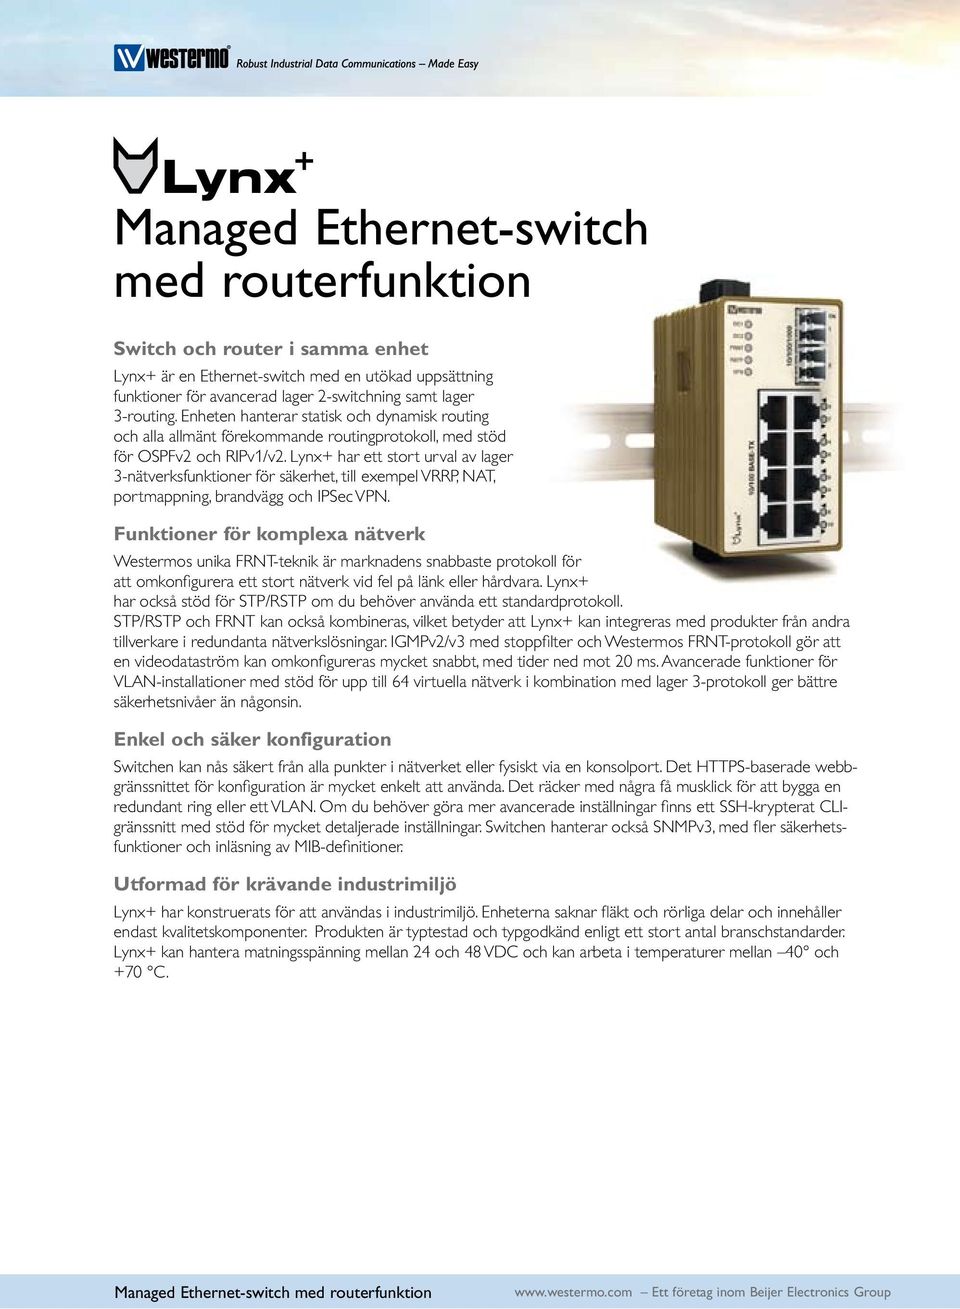 Lynx+ har ett stort urval av lager 3-nätverksfunktioner för säkerhet, till exempel VRRP, NAT, portmappning, brandvägg och IPSec VPN.